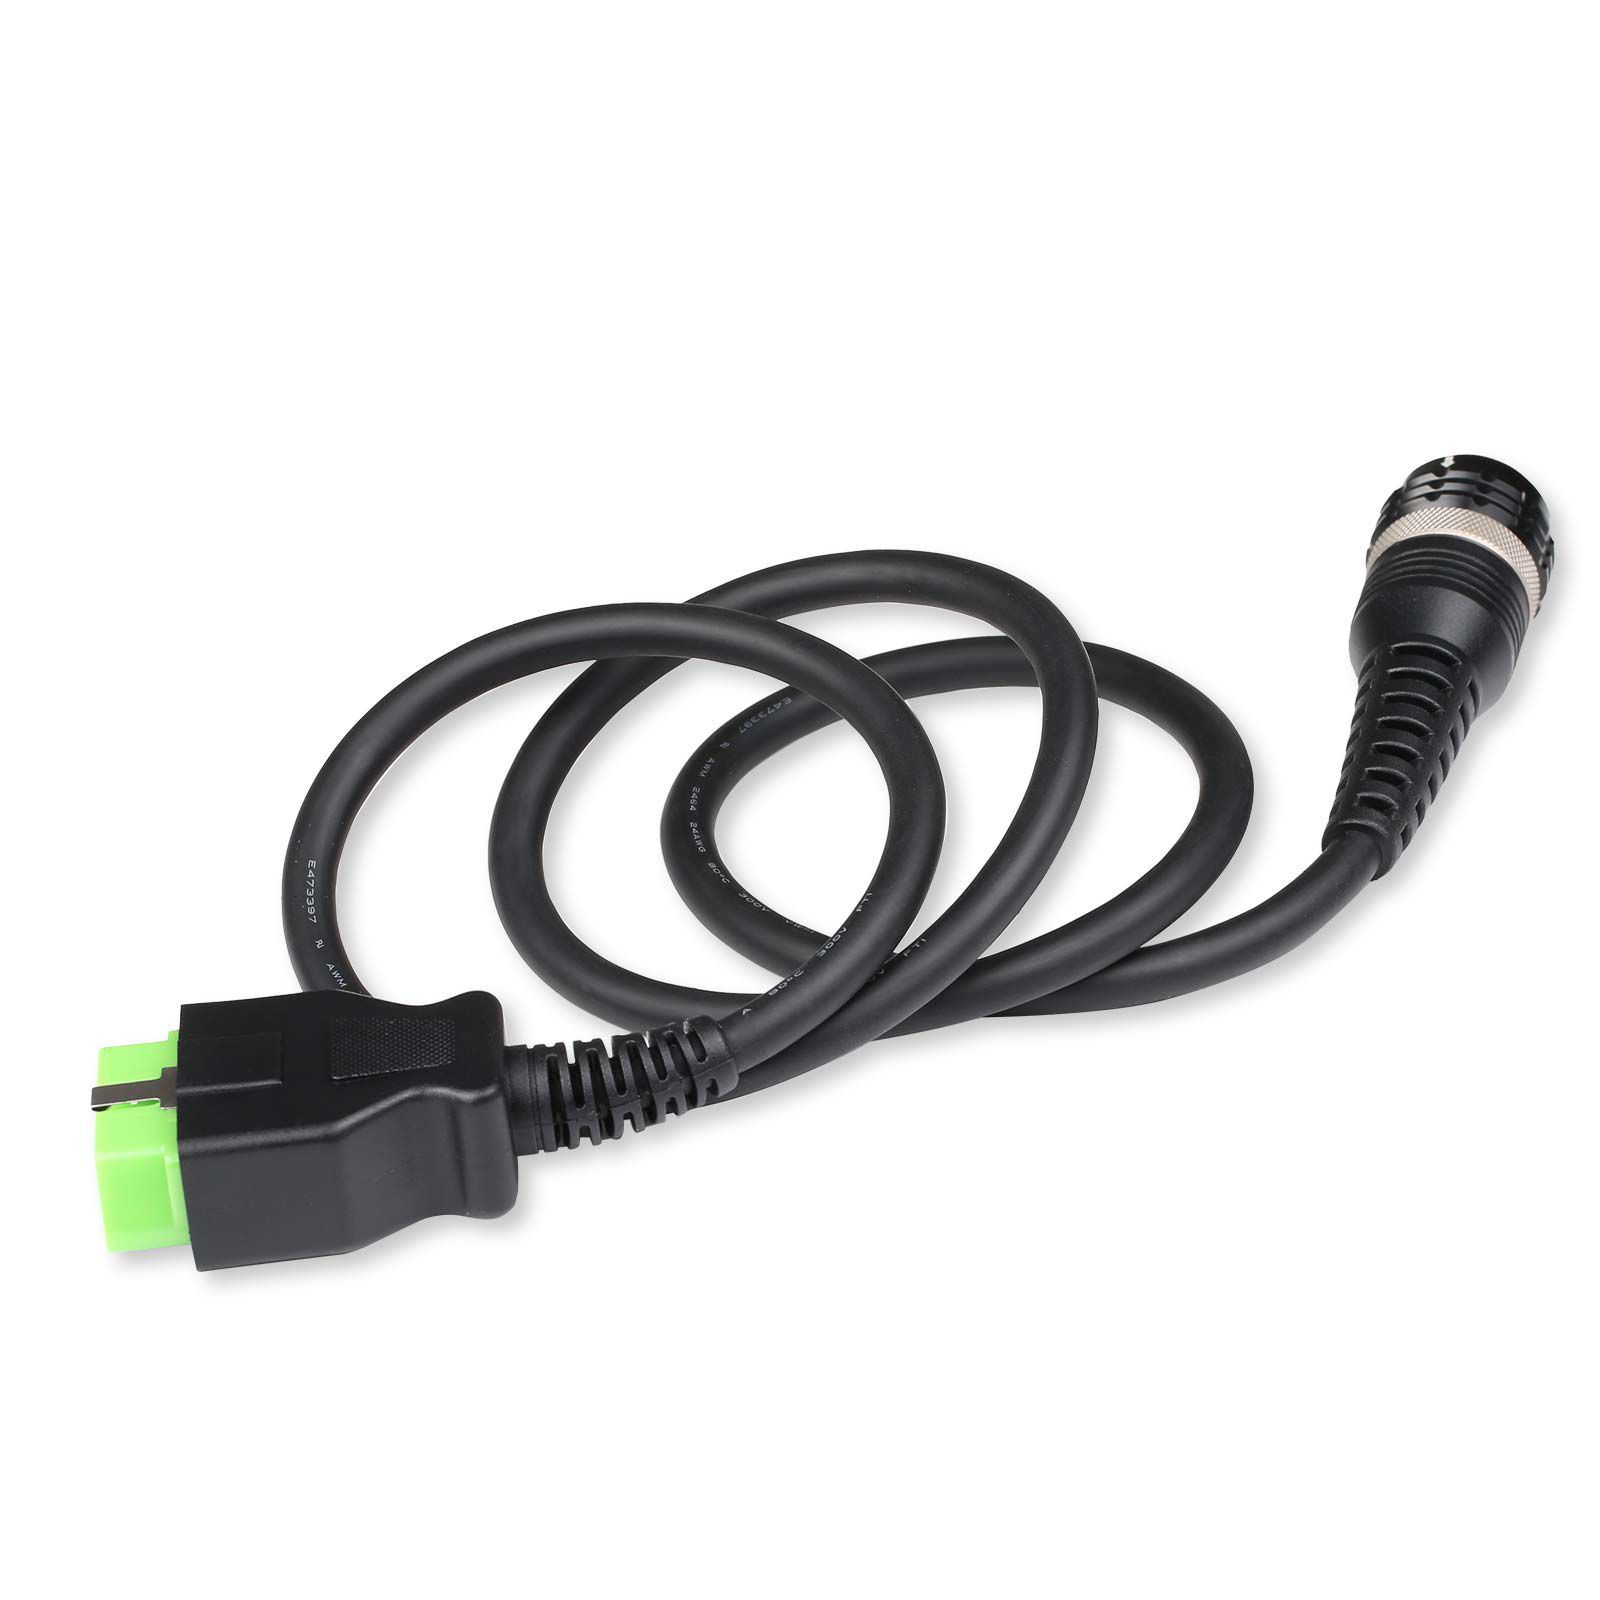  Câble OBD2 pour Volvo 88890304 vocom Green Edition